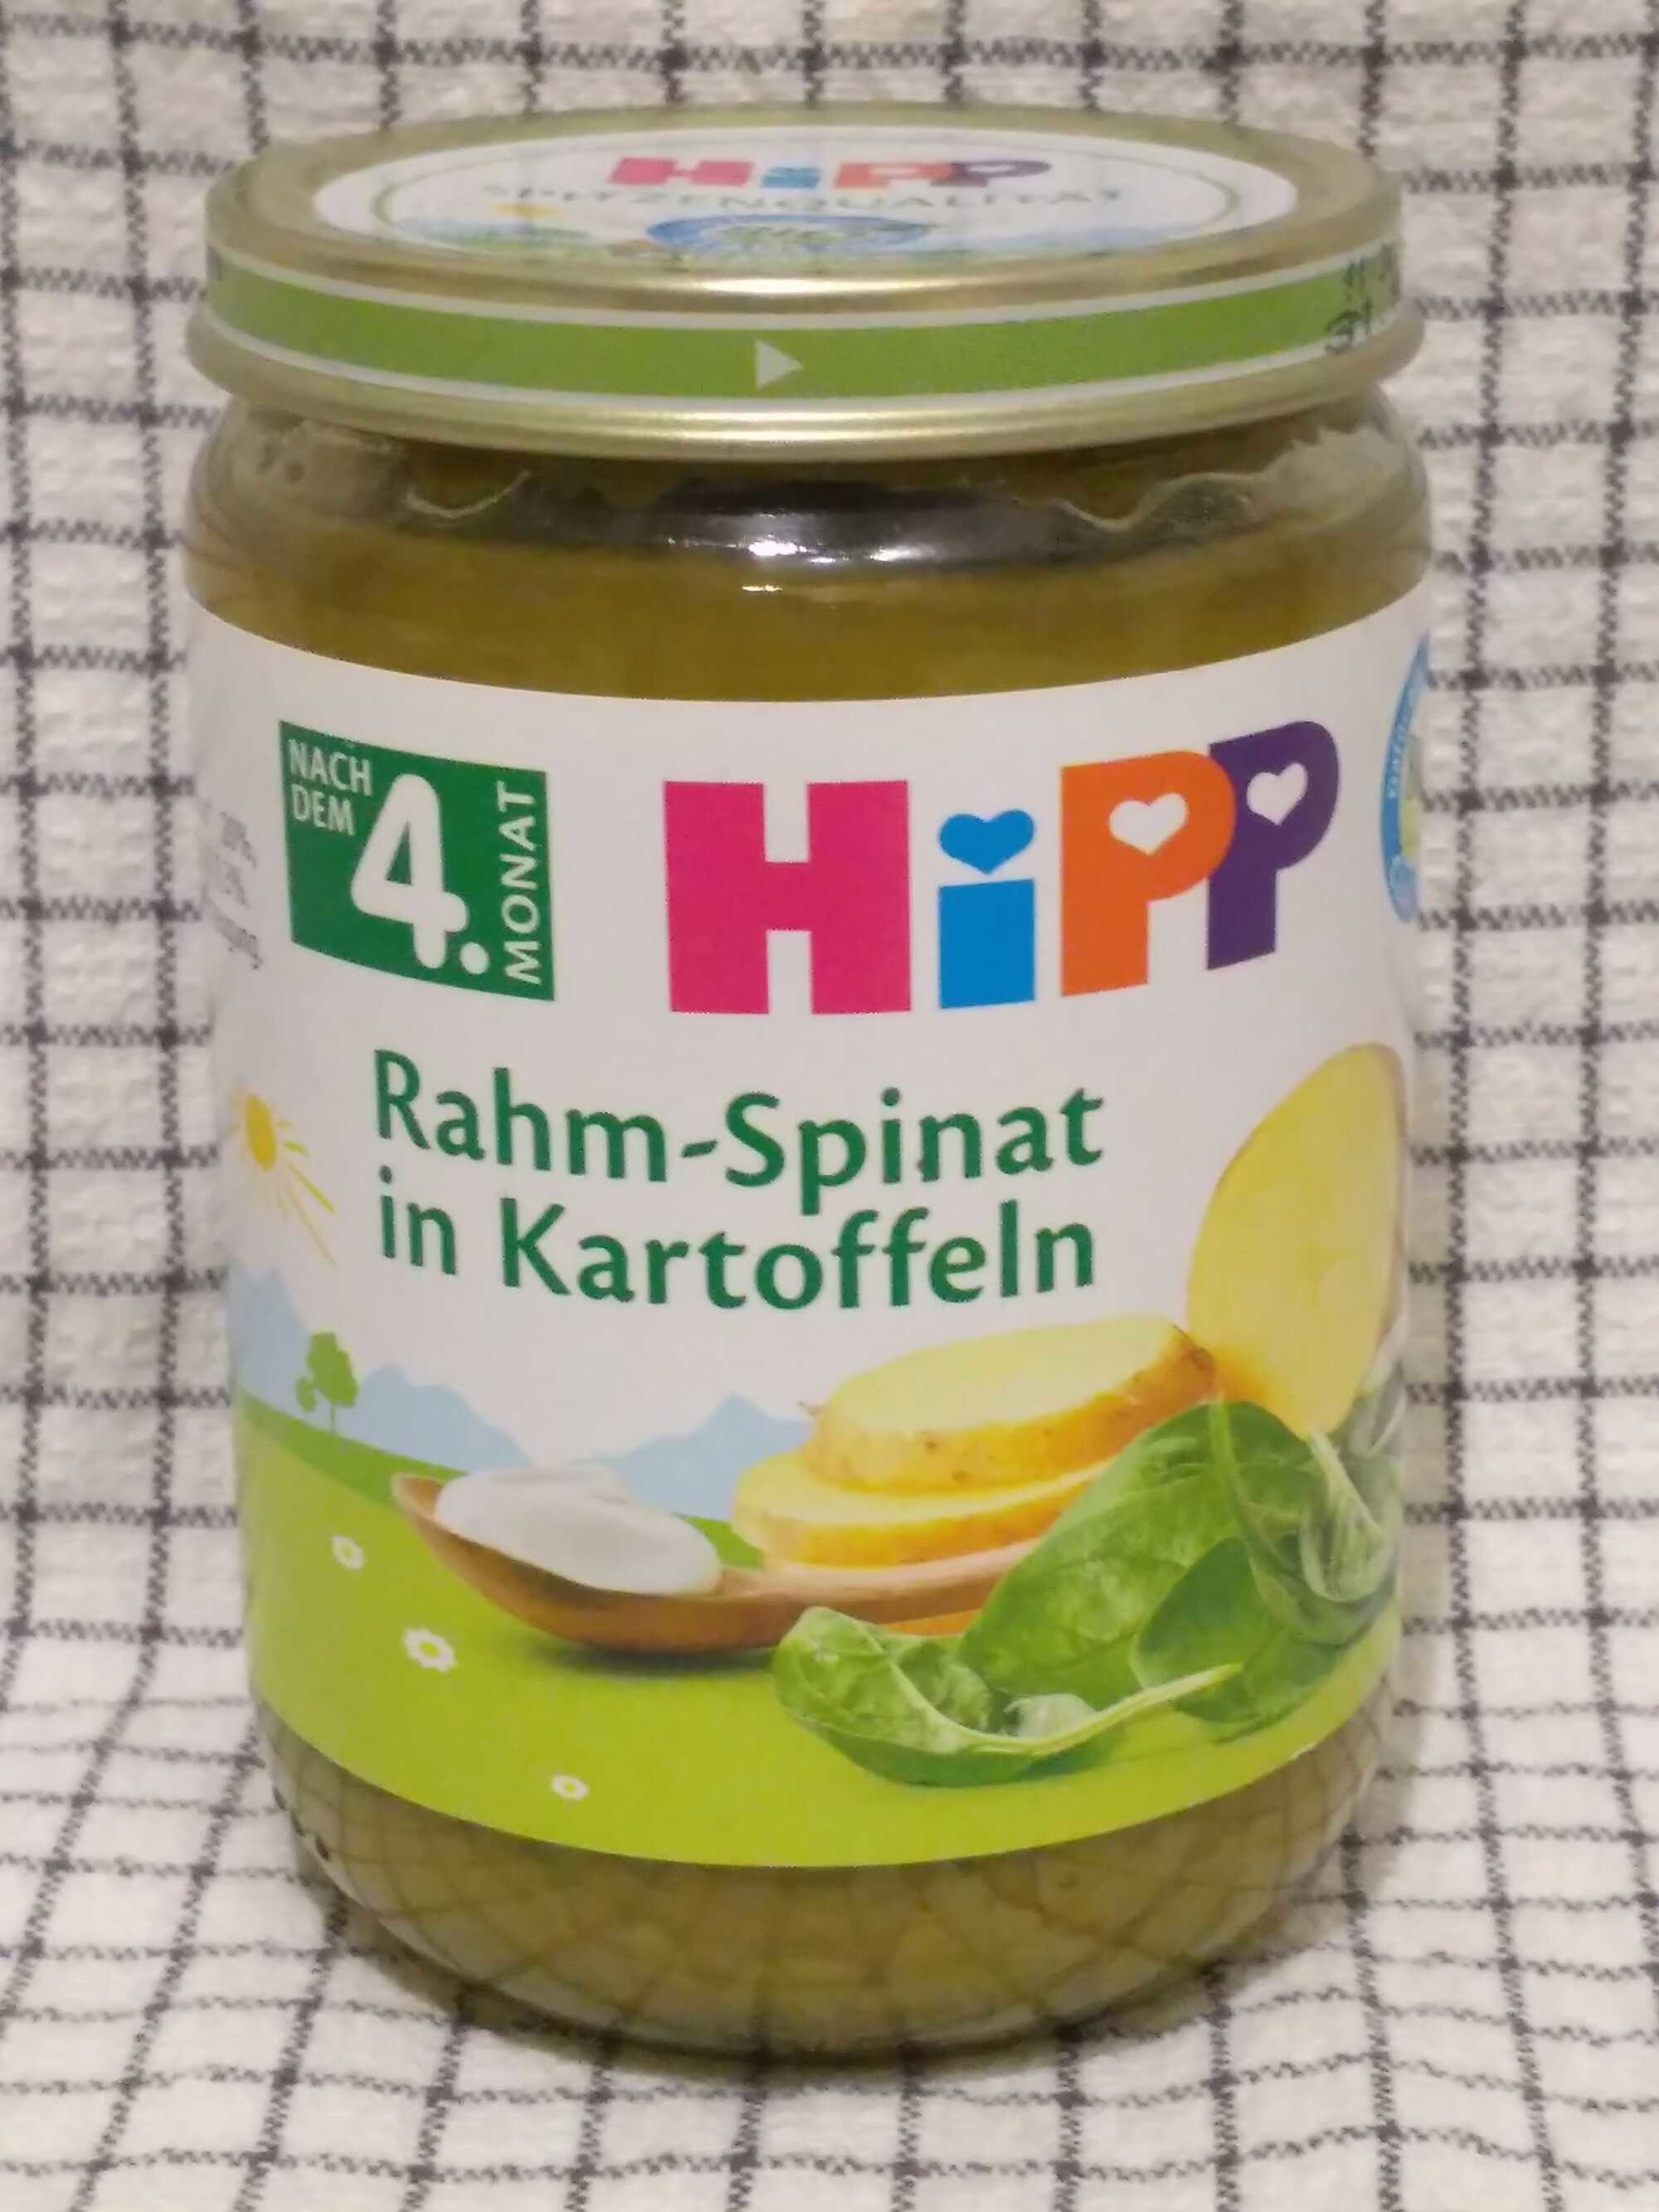 Rahm-Spinat in Kartoffeln  ( Nach dem 4. Monat ) - Produkt